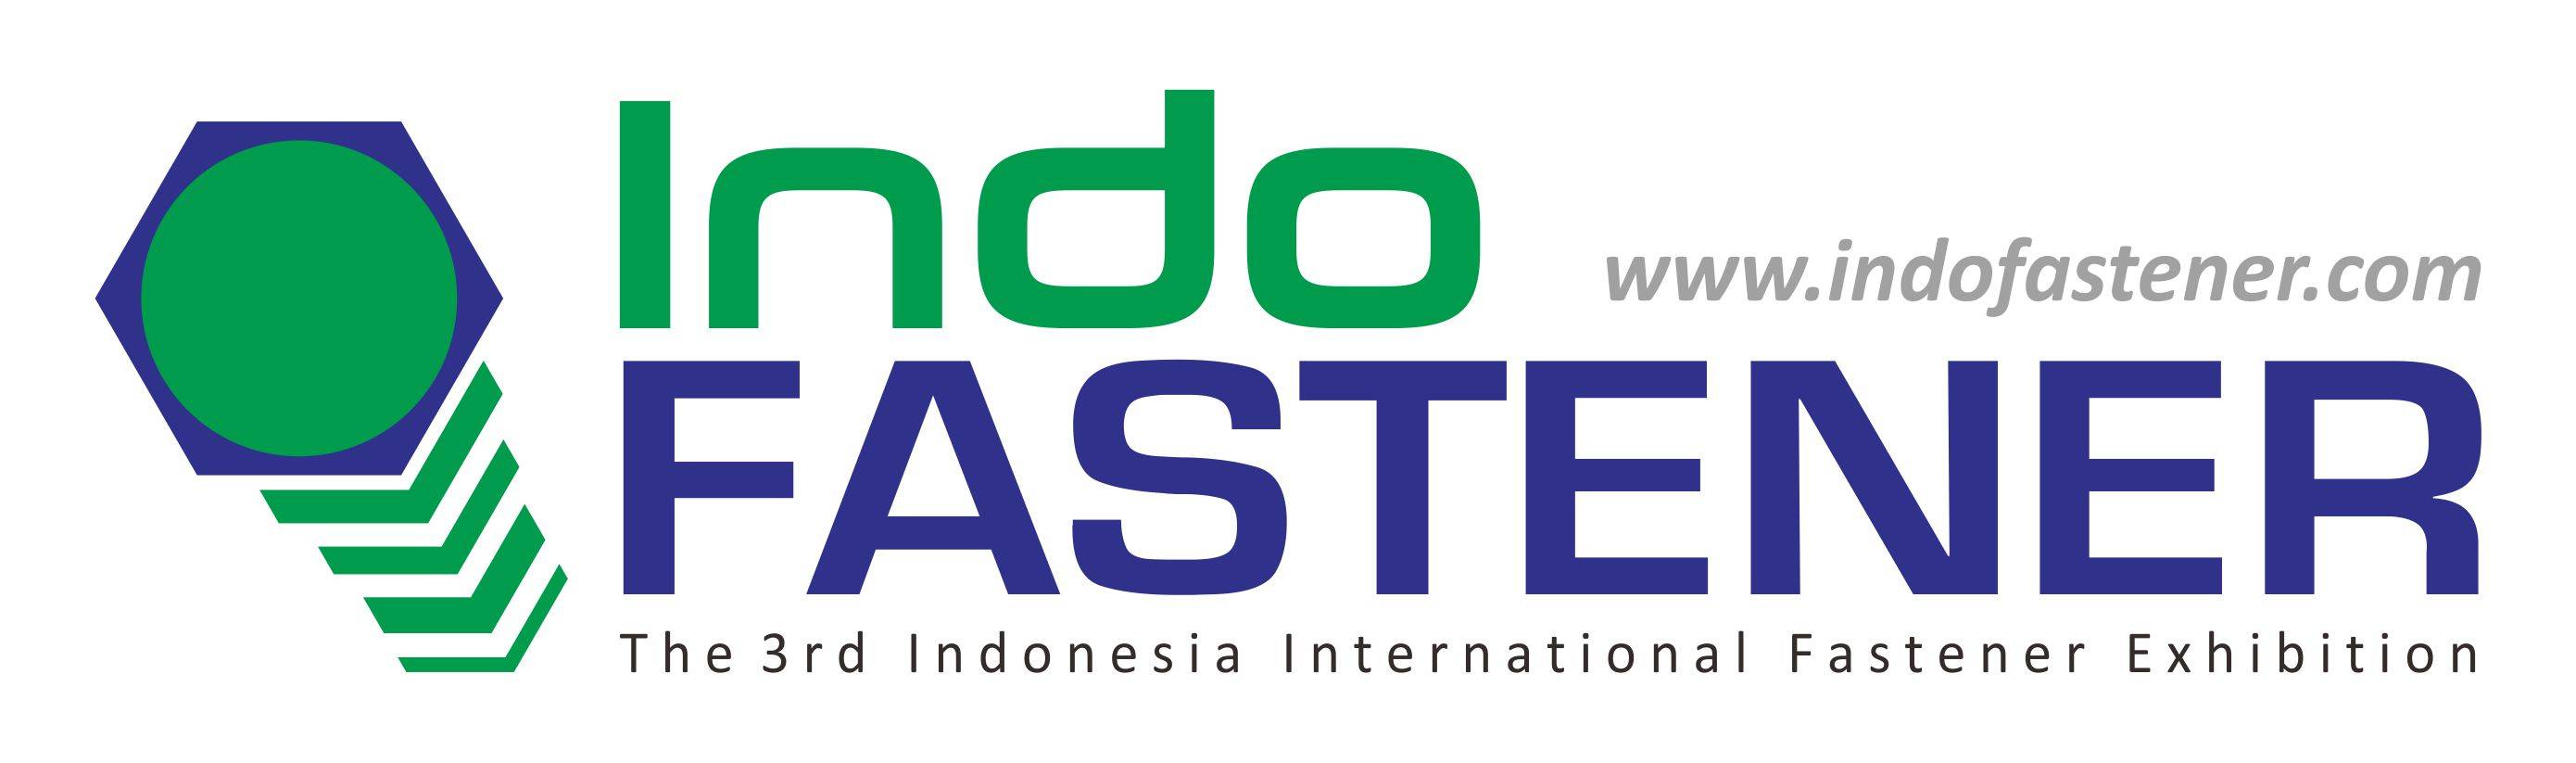 印尼雅加达国际五金和紧固件展览会logo